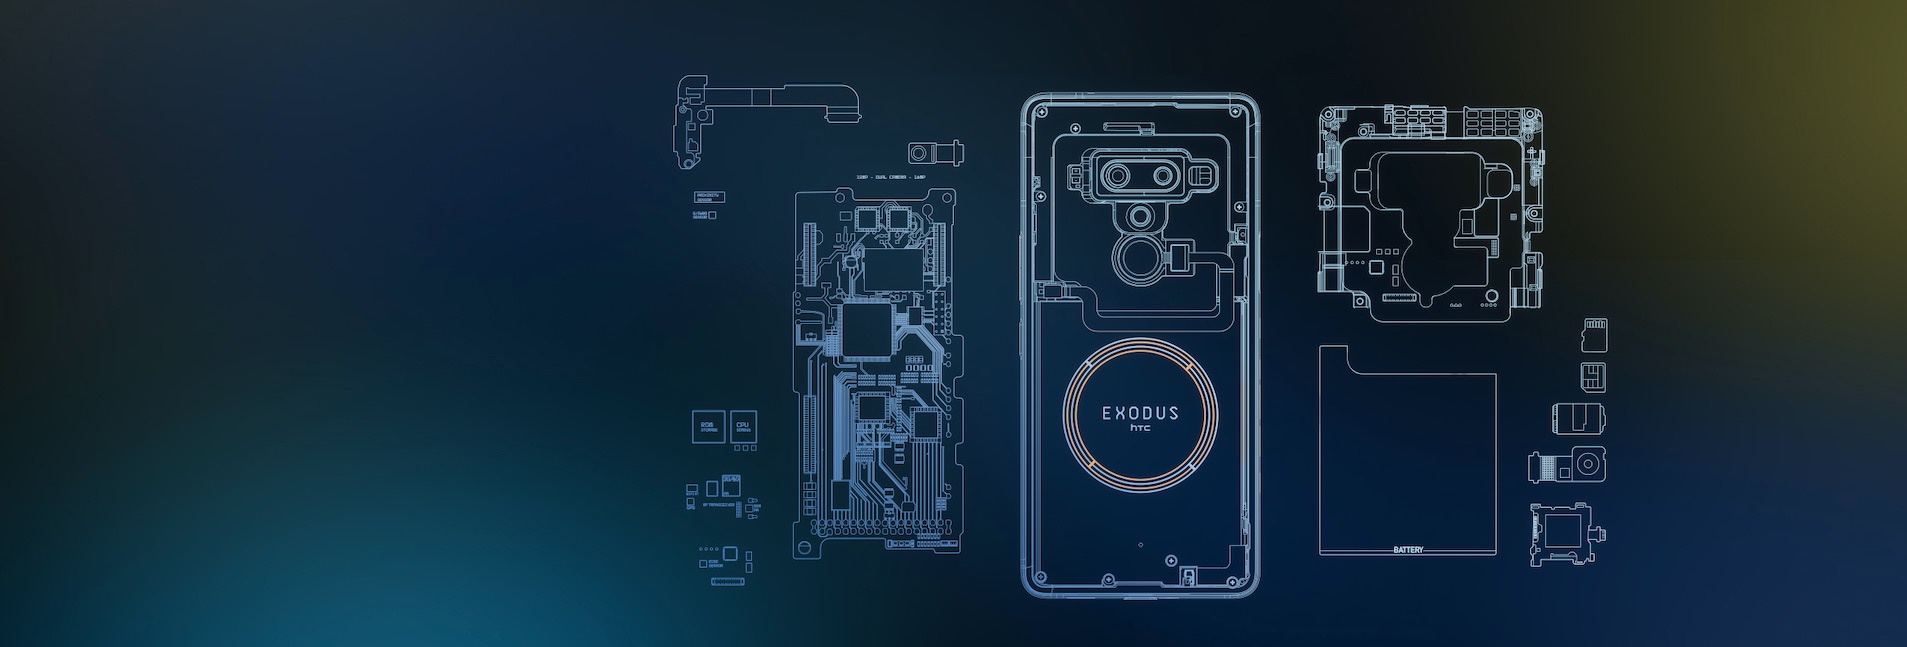 HTC Exodus 1 internals sketch